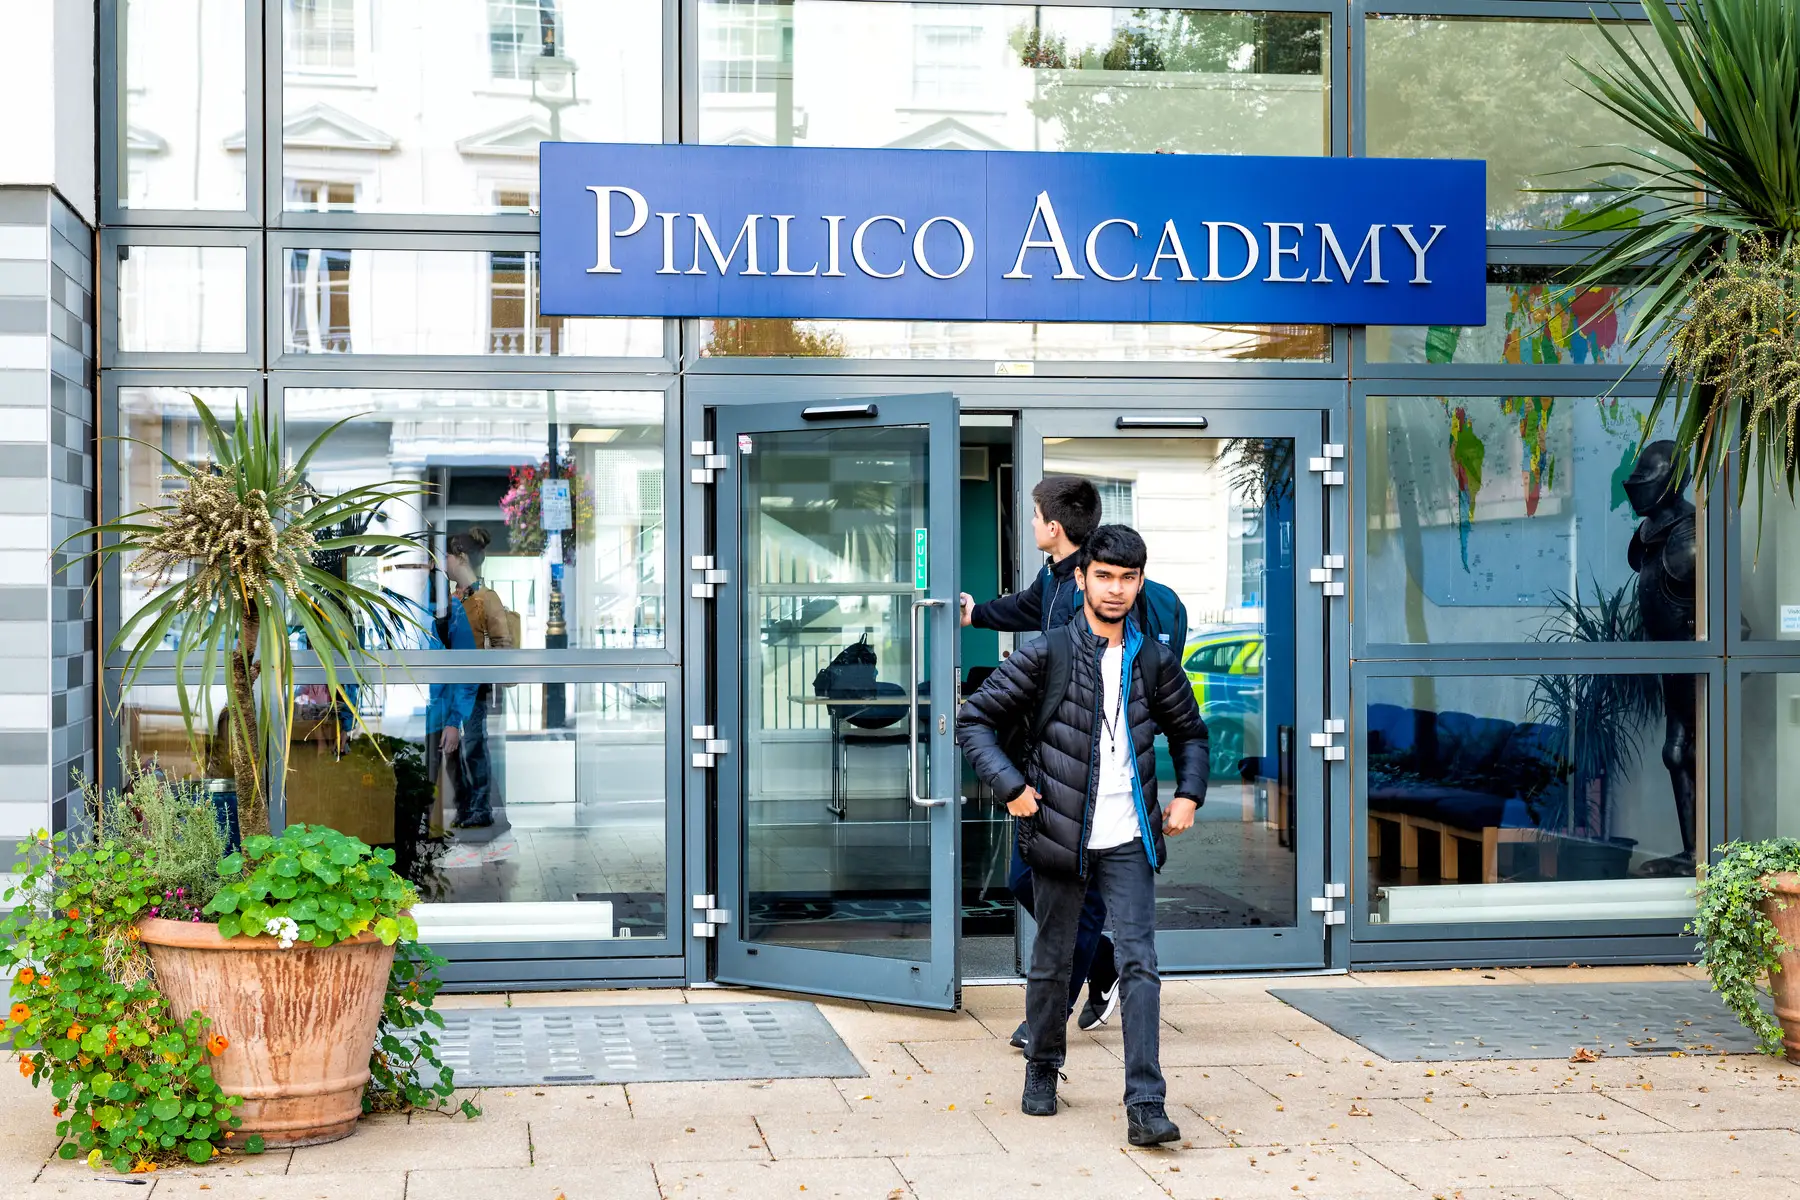 Pimlico Acadey, UK education system